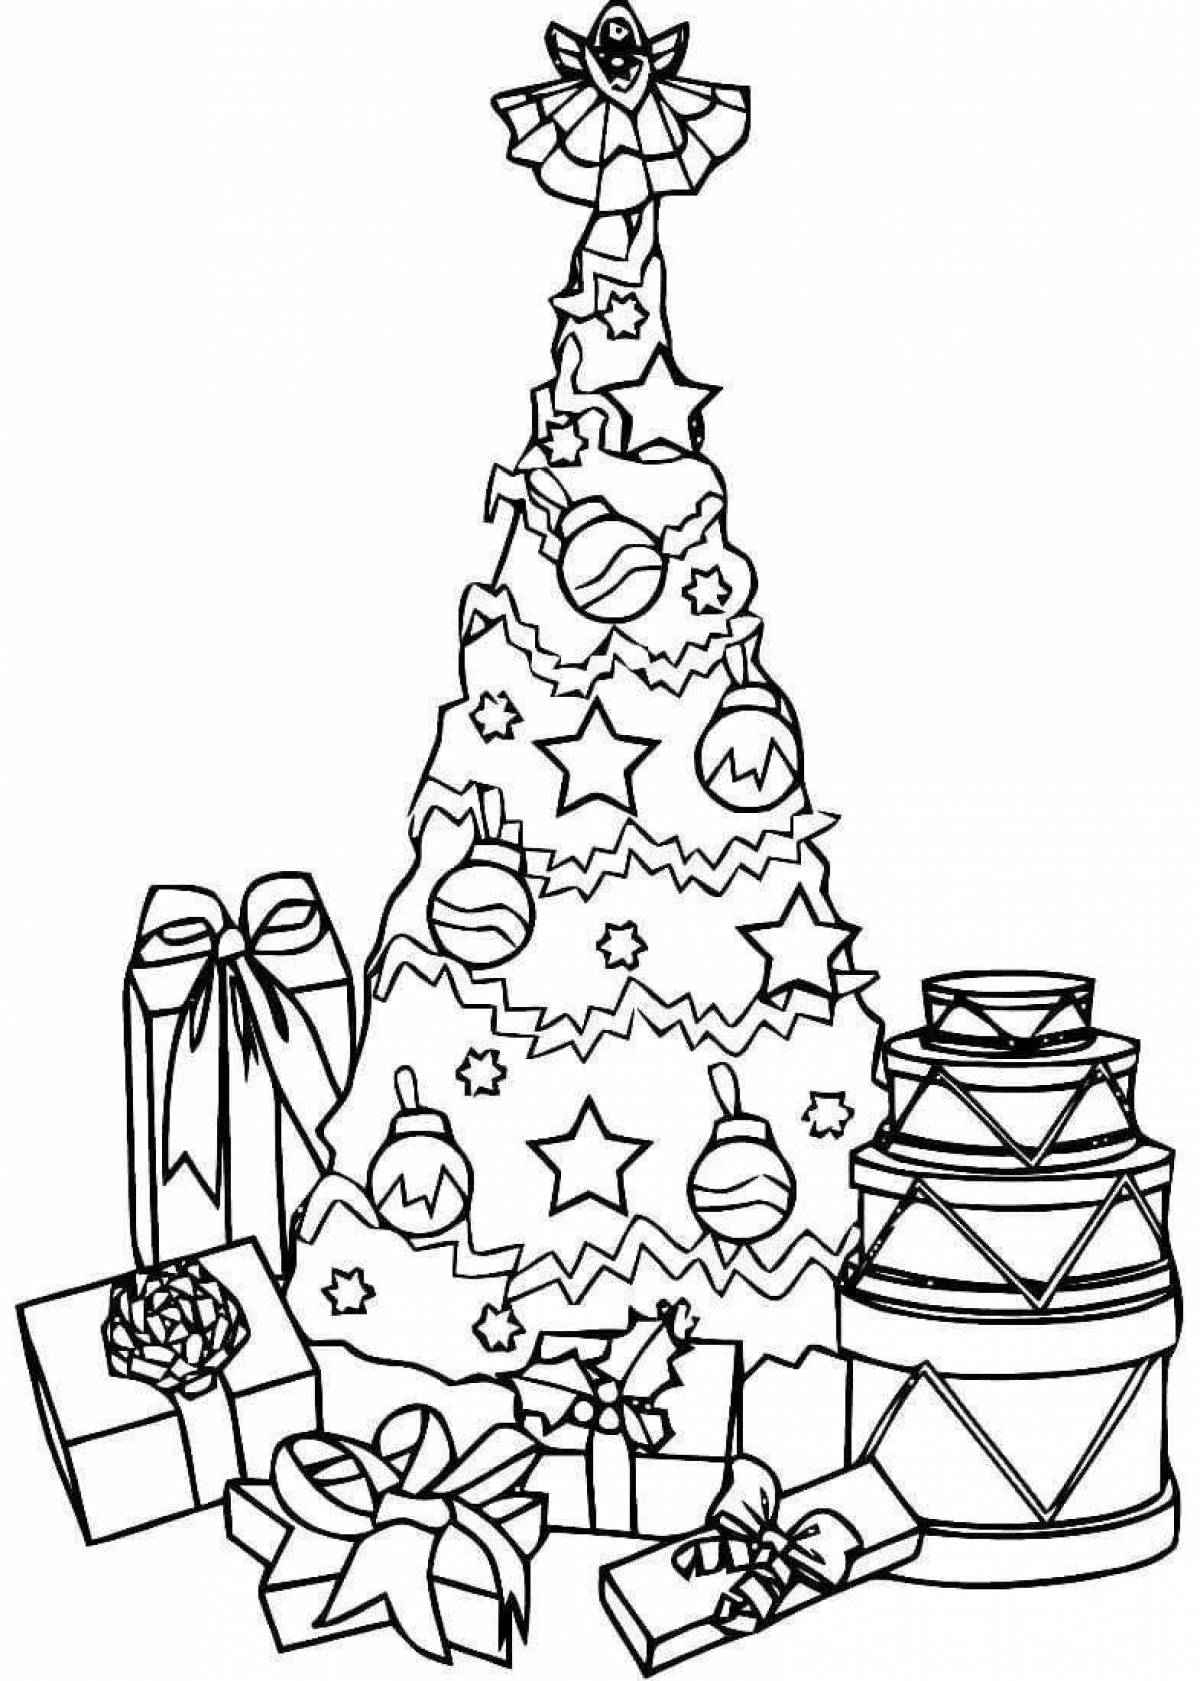 Яркая новогодняя елка с подарками для детей